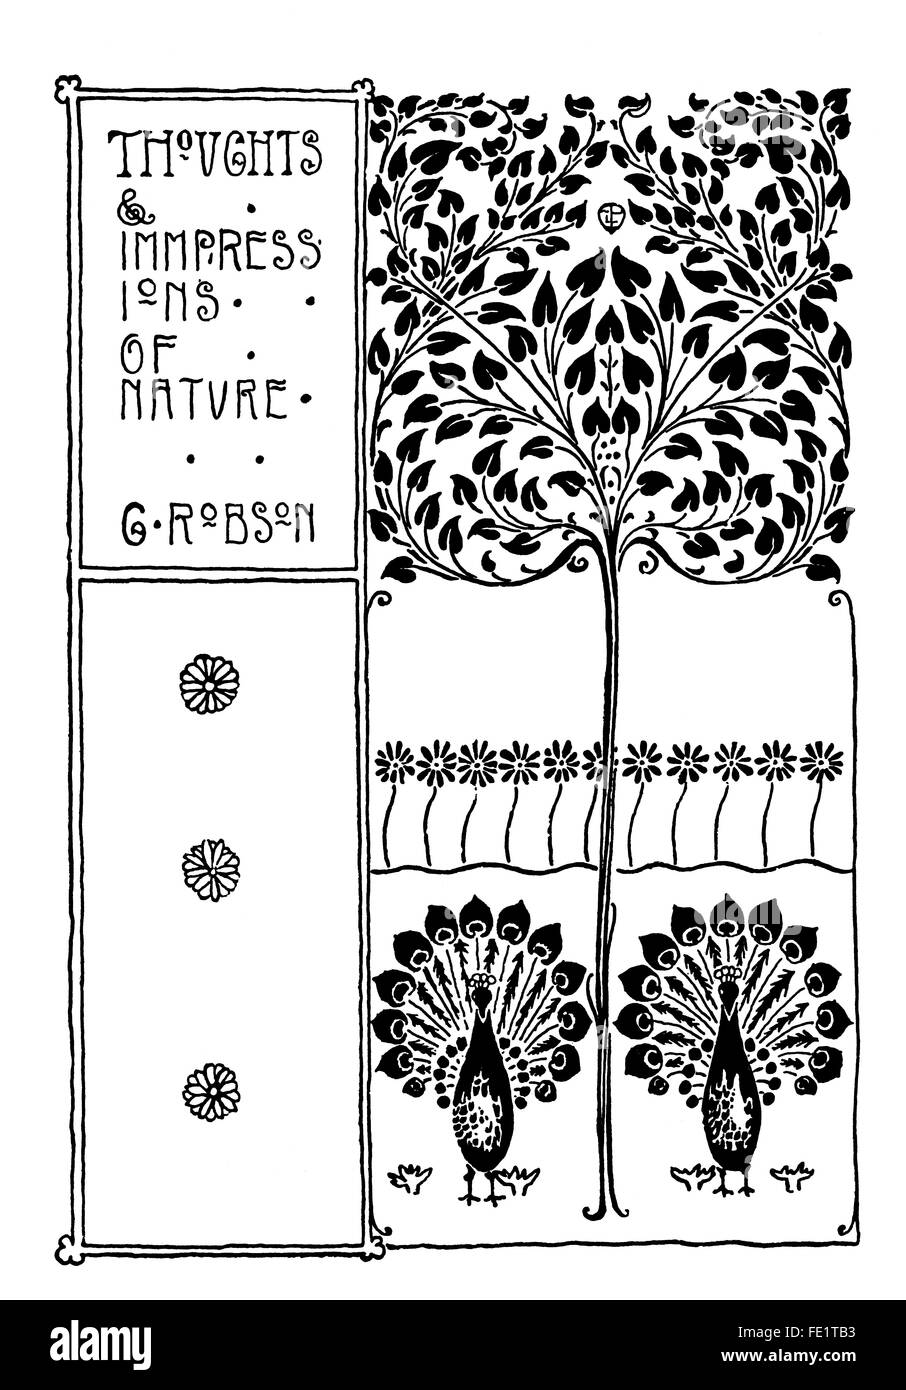 Los pensamientos y las impresiones de la Naturaleza, el diseño de la cubierta del libro de Edgar L Pattison de Londres, línea art nouveau ilustración desde 1897 Foto de stock